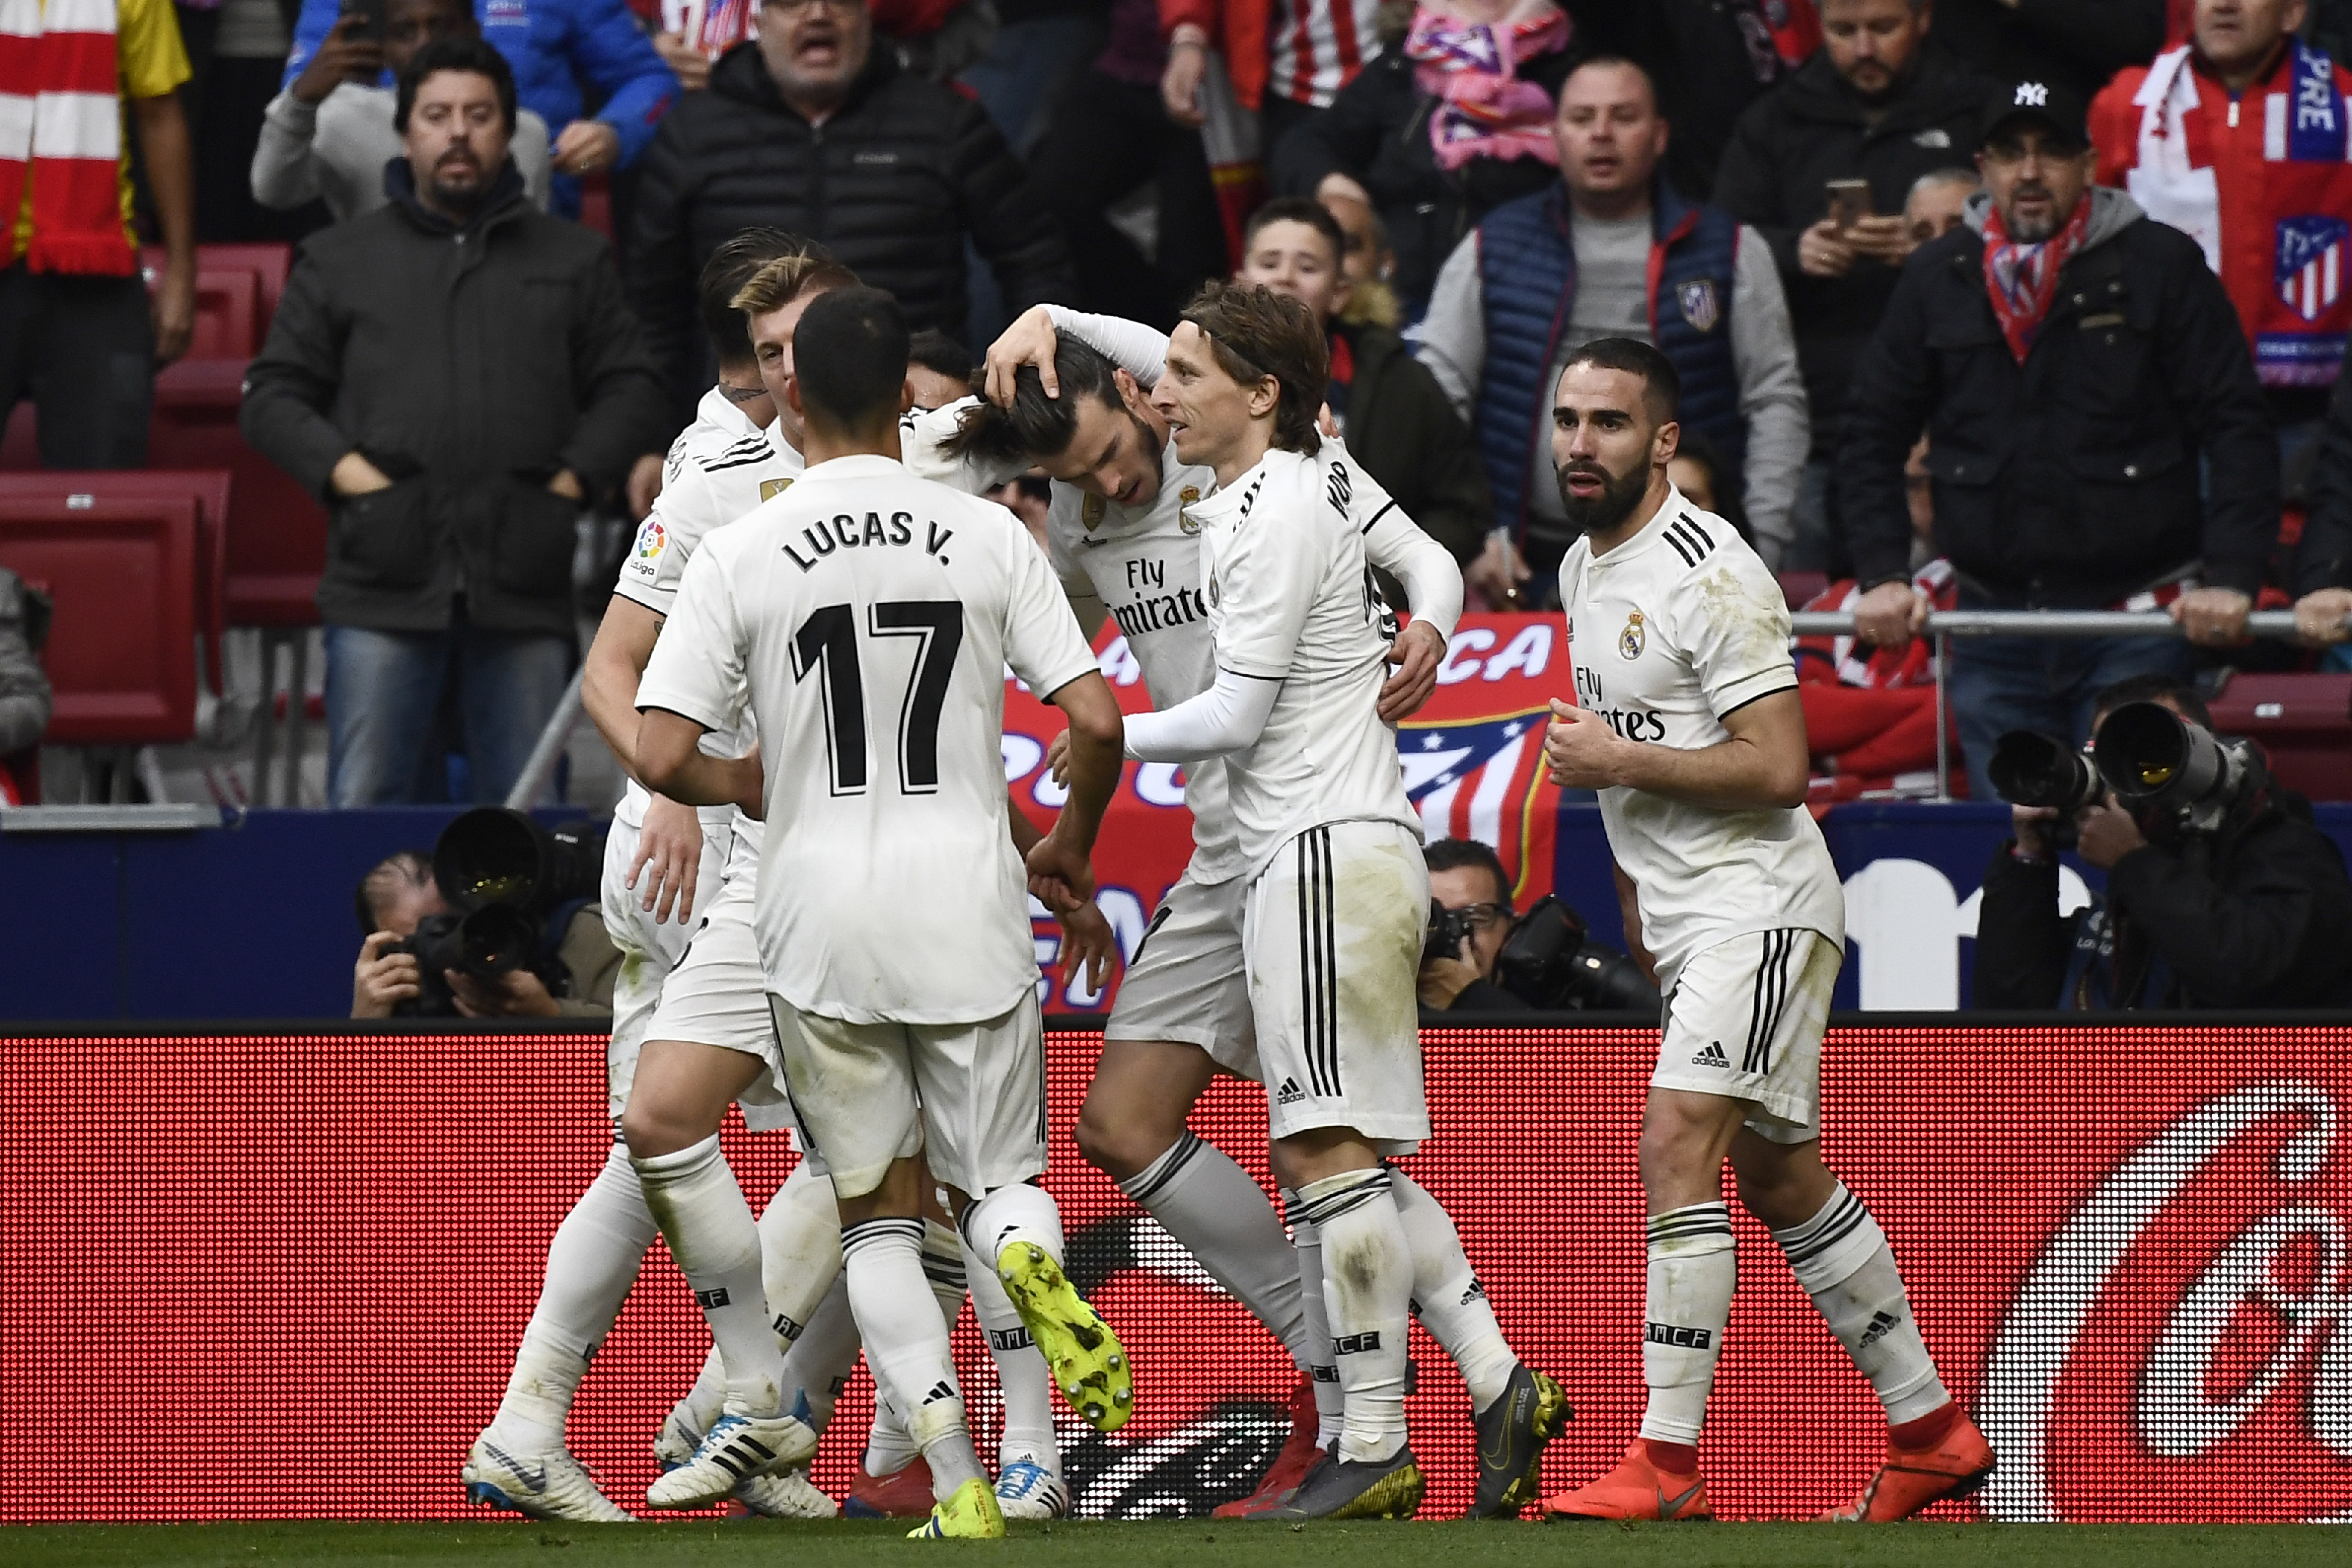 Los jugadores del Real Madrid celebran el gol anotado por Gareth Bale. (Foto Prensa Libre: AFP)